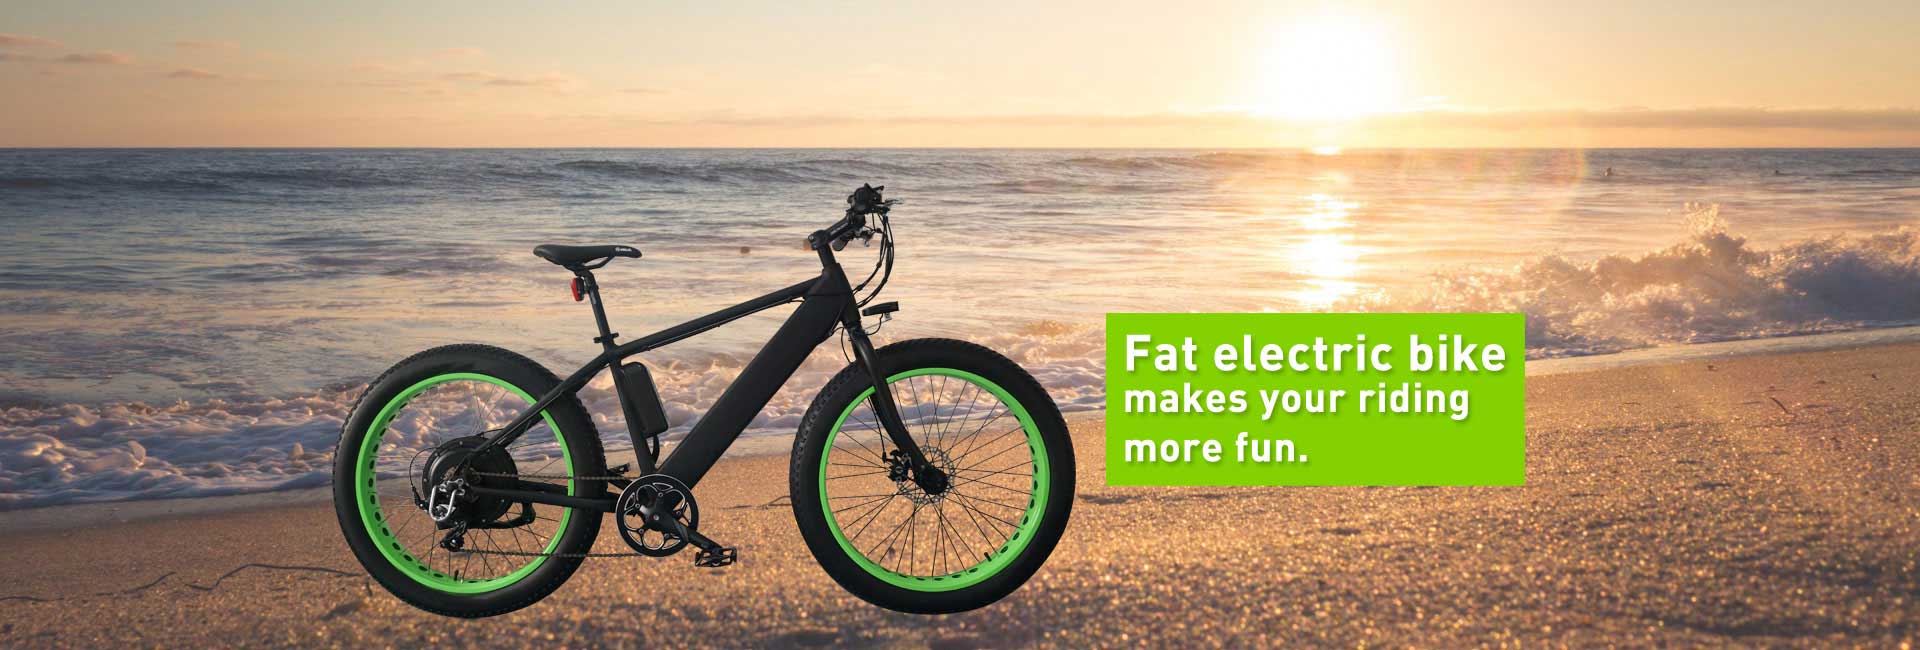 fat electric bike